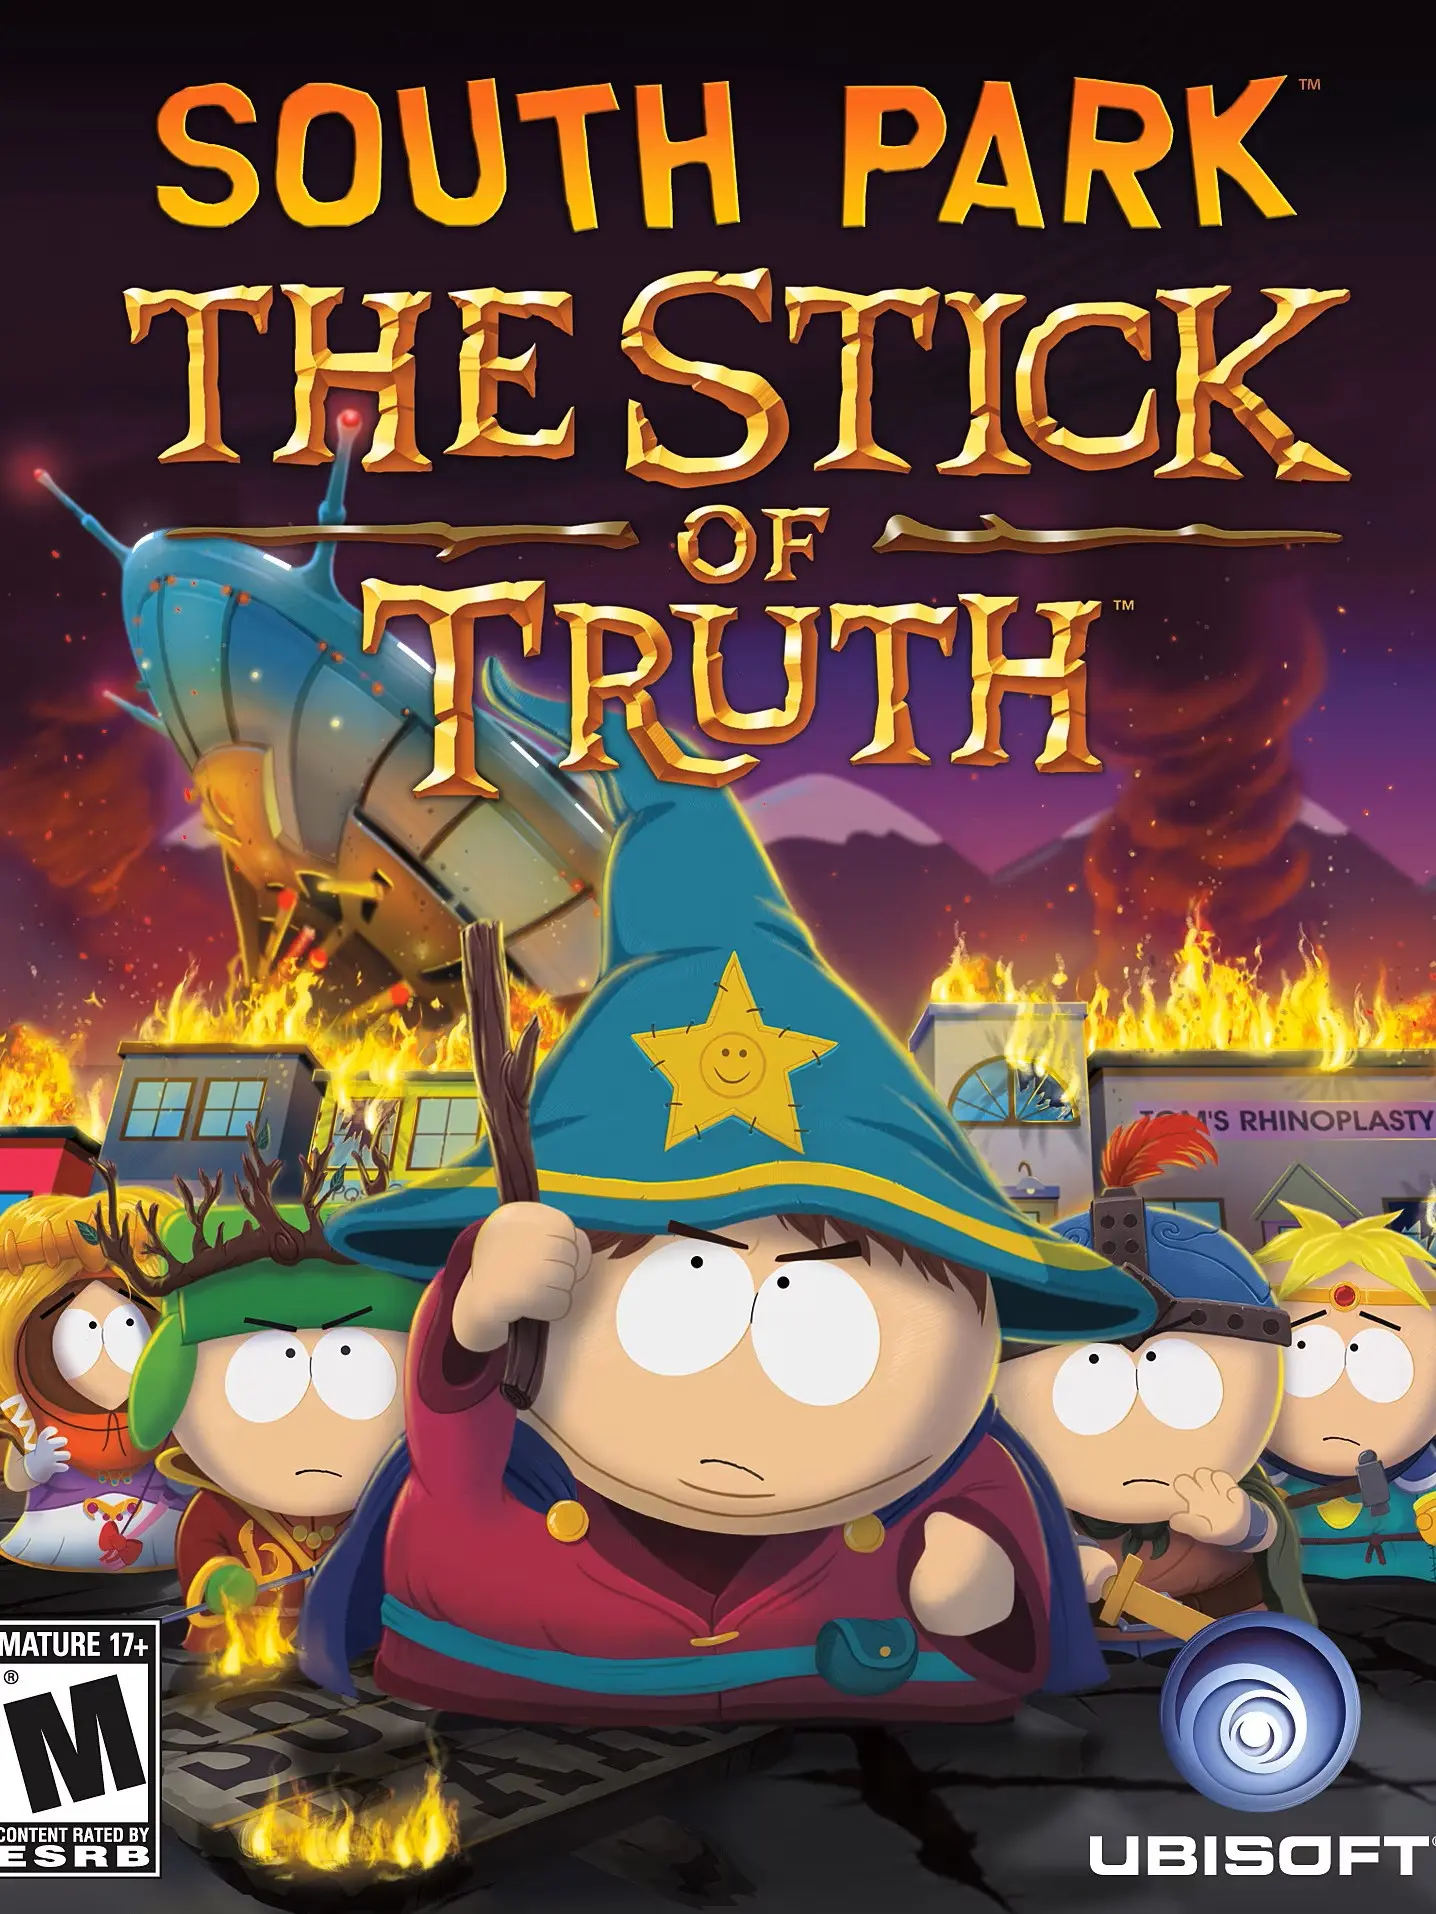 South Park The Stick of Truth Uncut (EU) (PC) - Steam - Digital Code